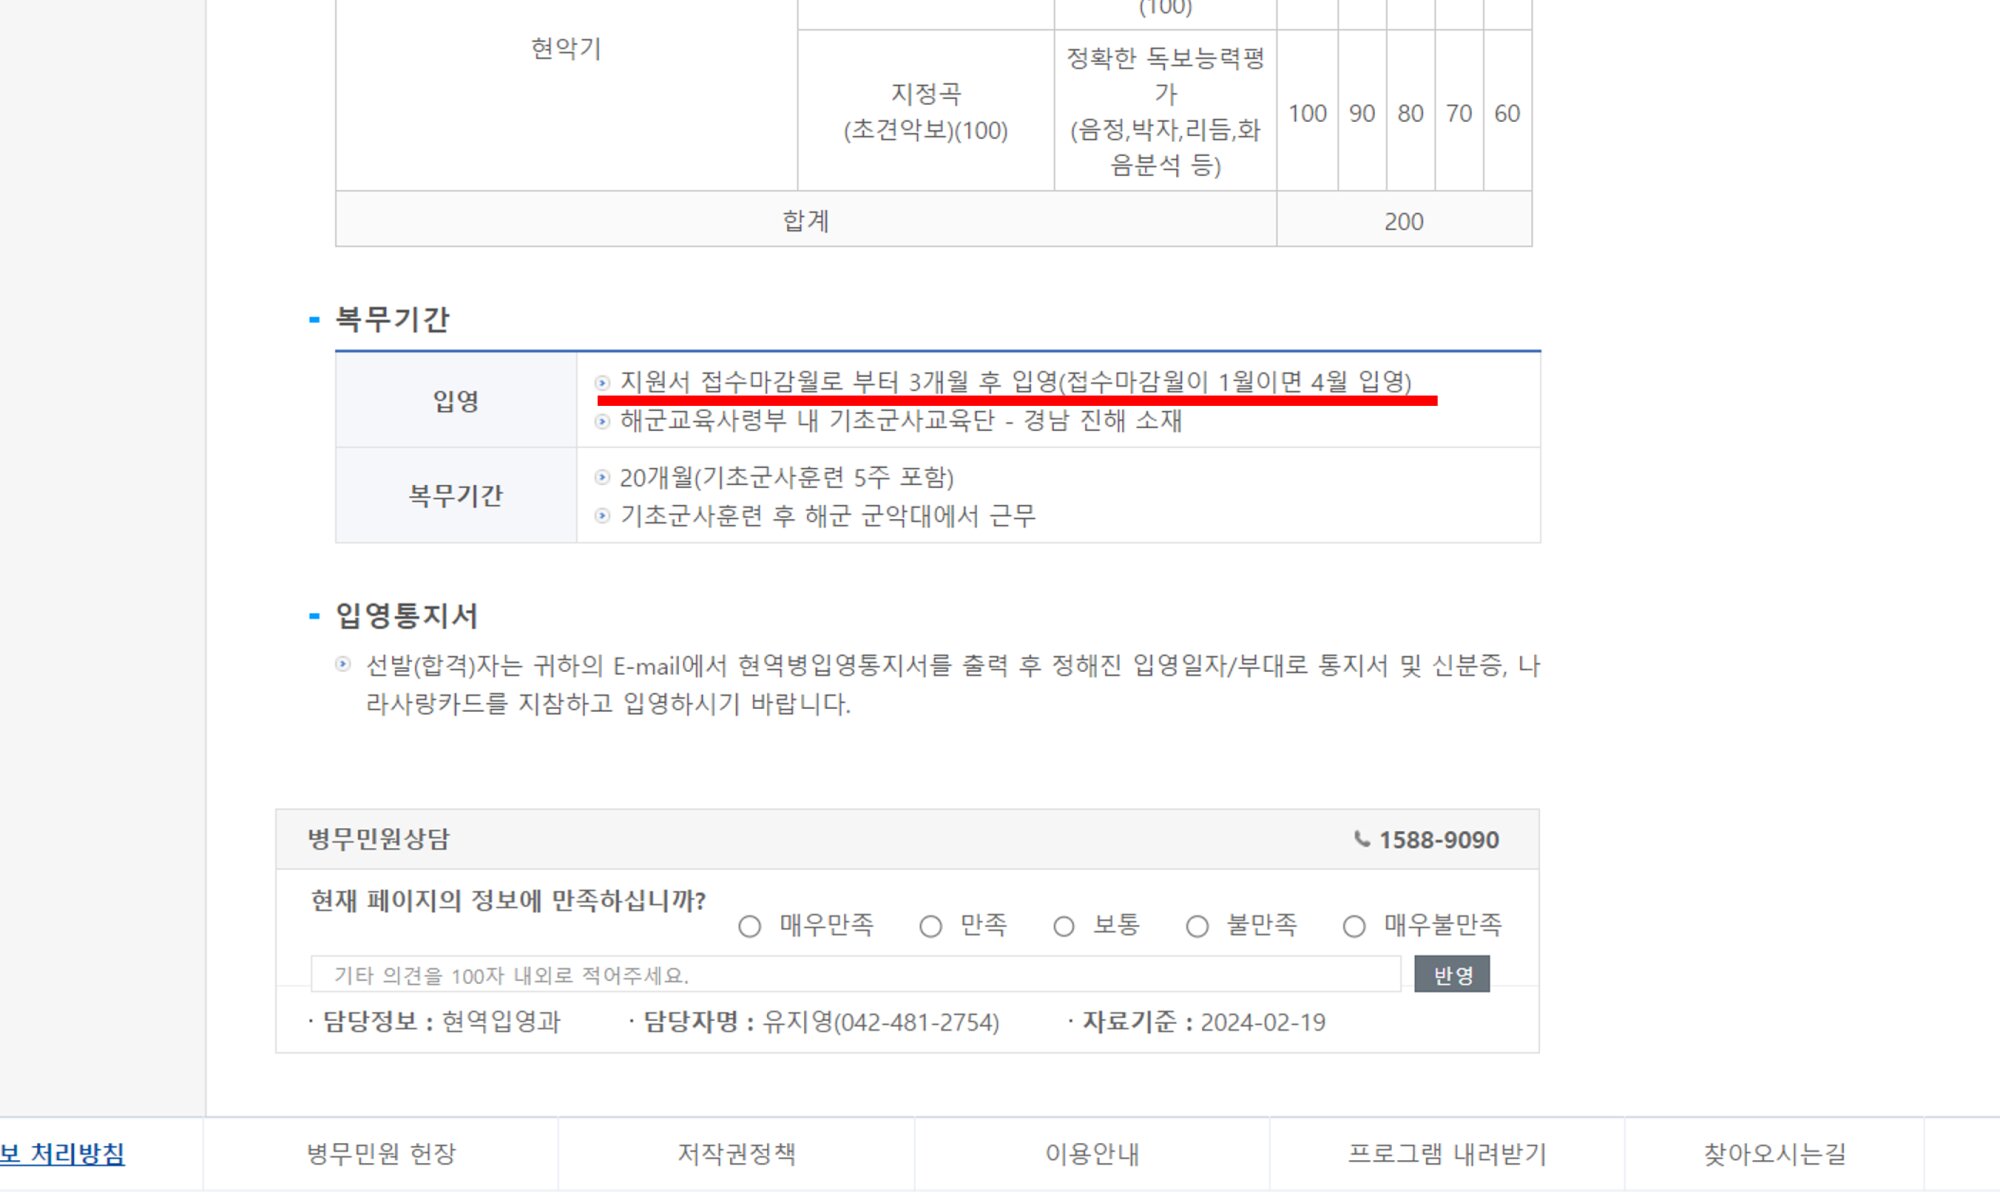 韓国兵務庁のサイトより　海軍軍楽隊志願者は「志願書受付日から3か月以内に入営」と記されている